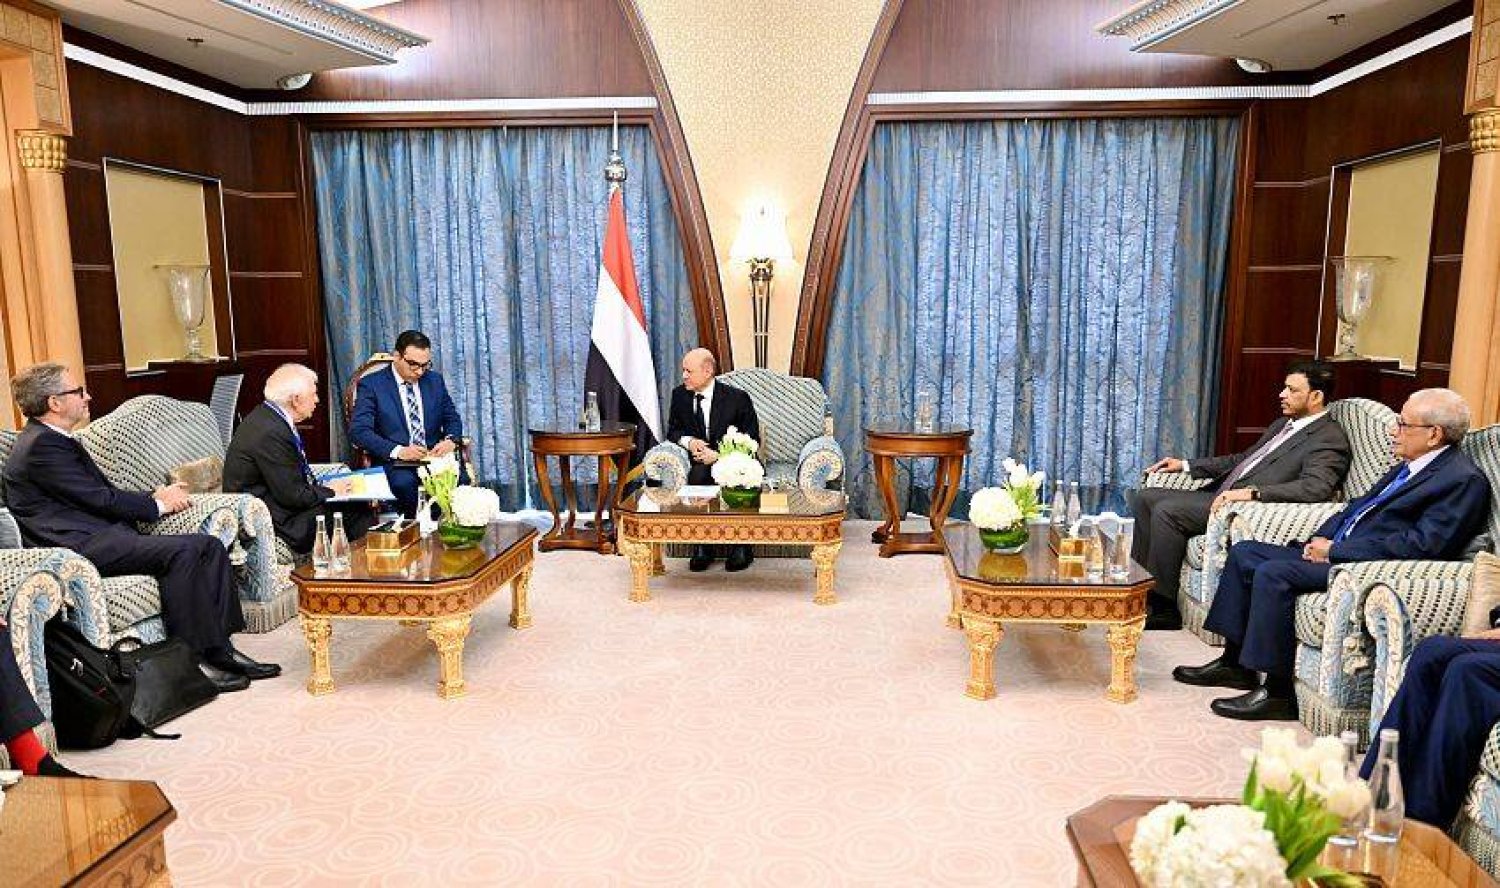 رئيس مجلس القيادة الرئاسي اليمني رشاد العليمي استقبل في الرياض نائب رئيس المفوضية الأوروبية (سبأ)